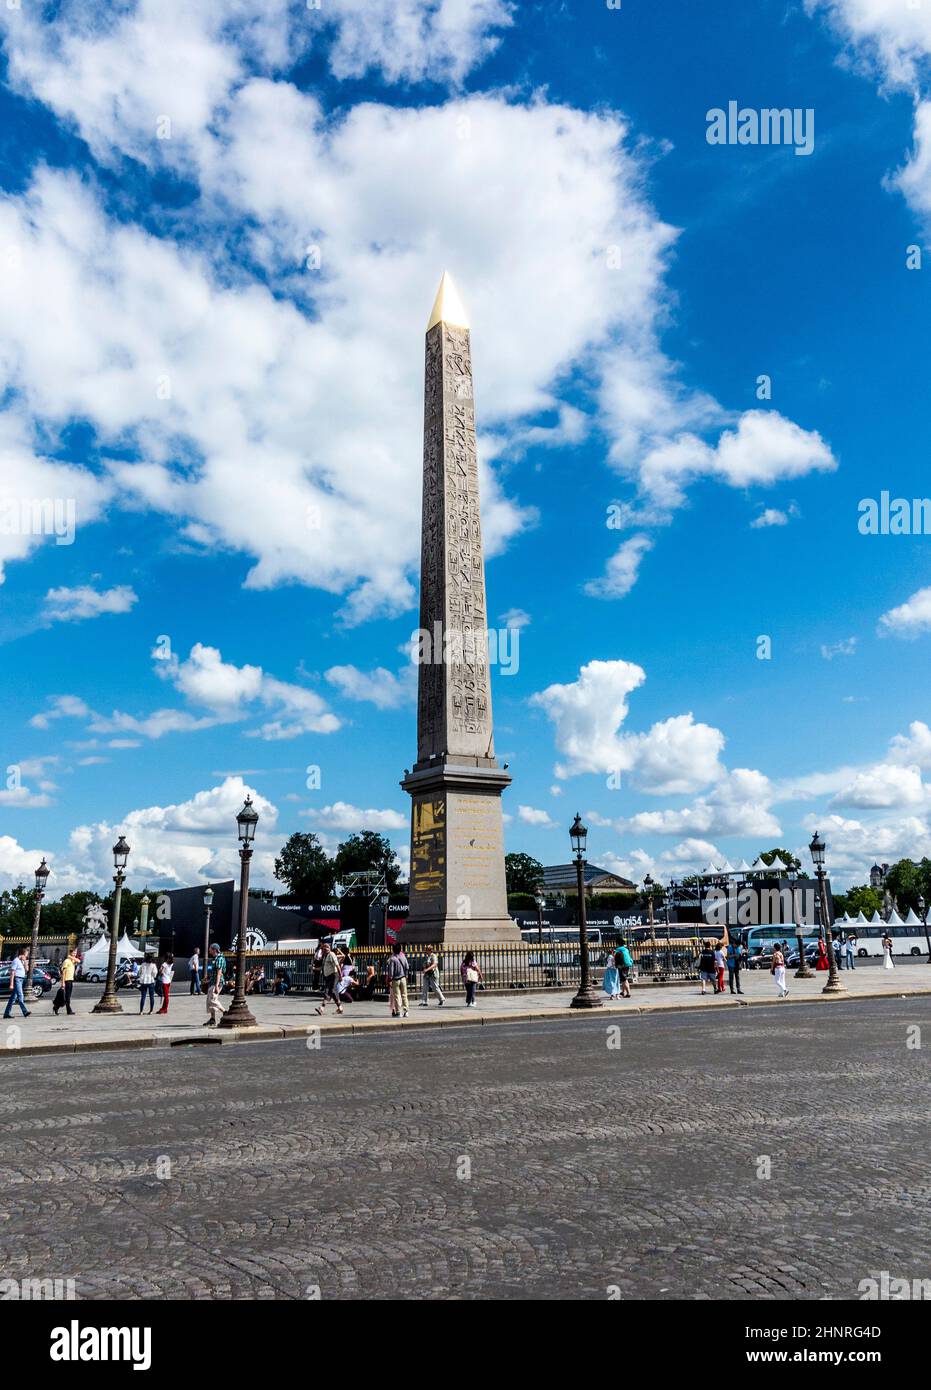 Obelisk (Obelisque) of the Place de la Concorde Stock Photo